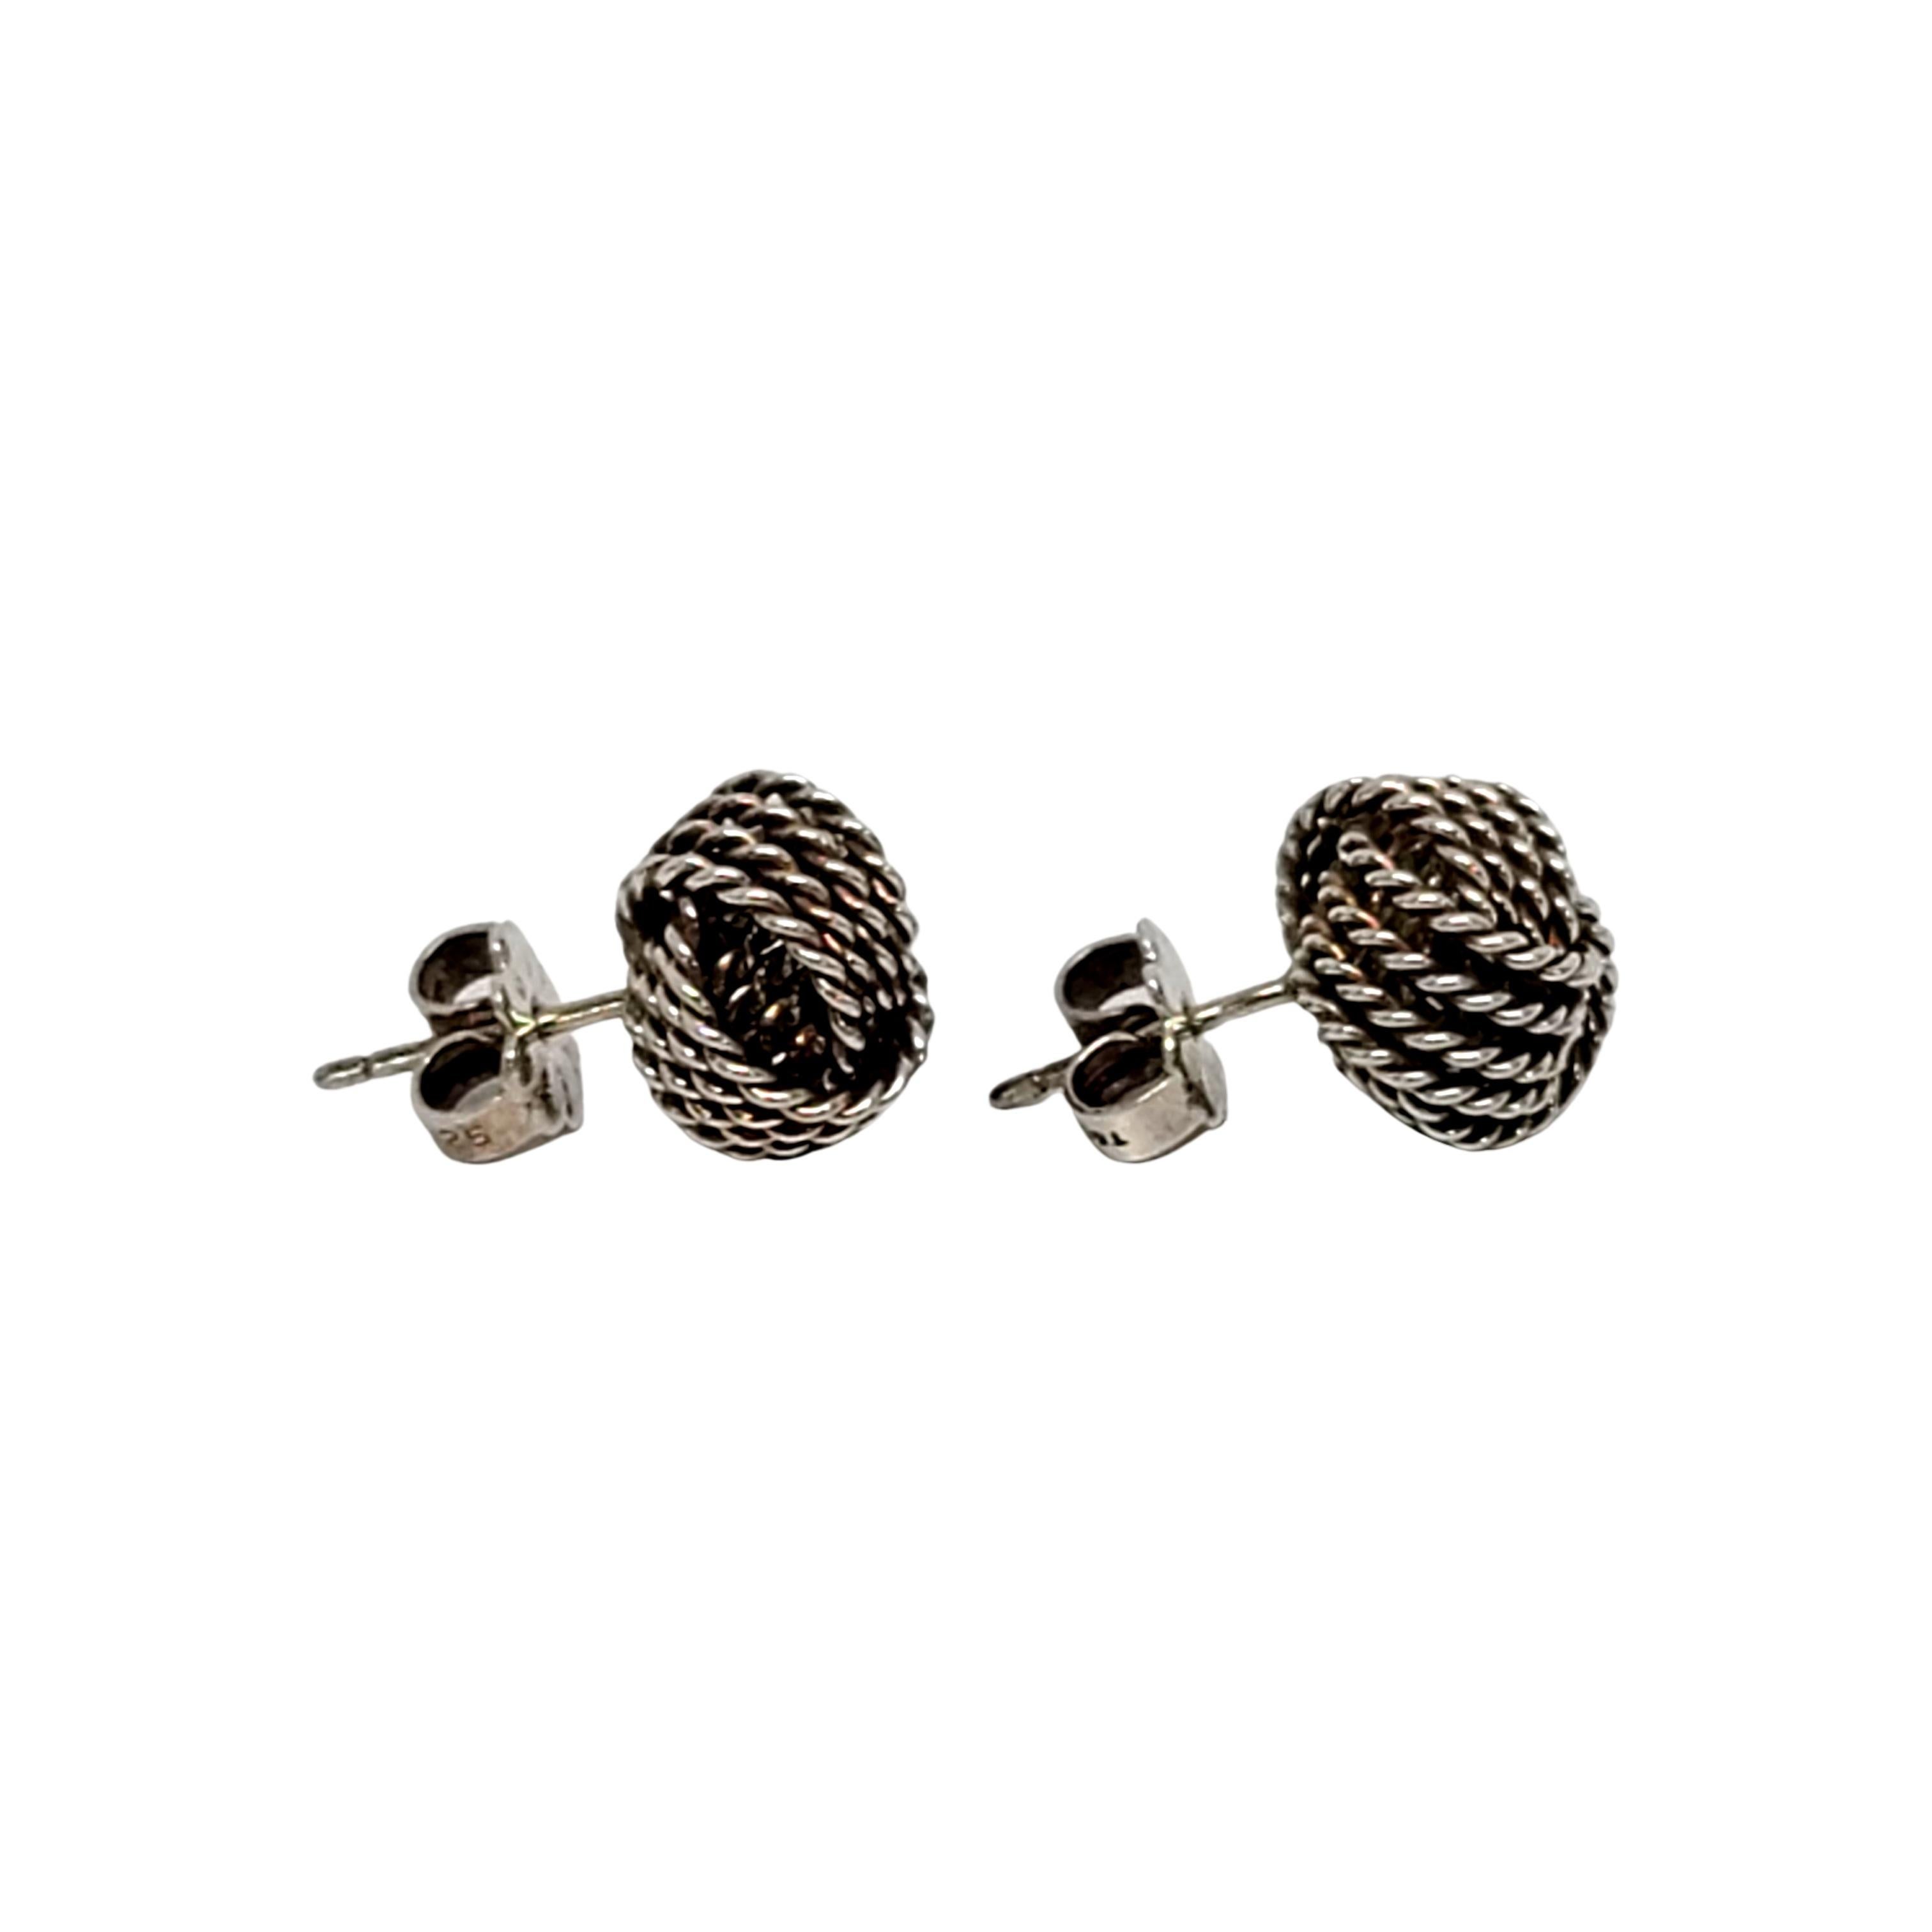 tiffany knot earrings silver